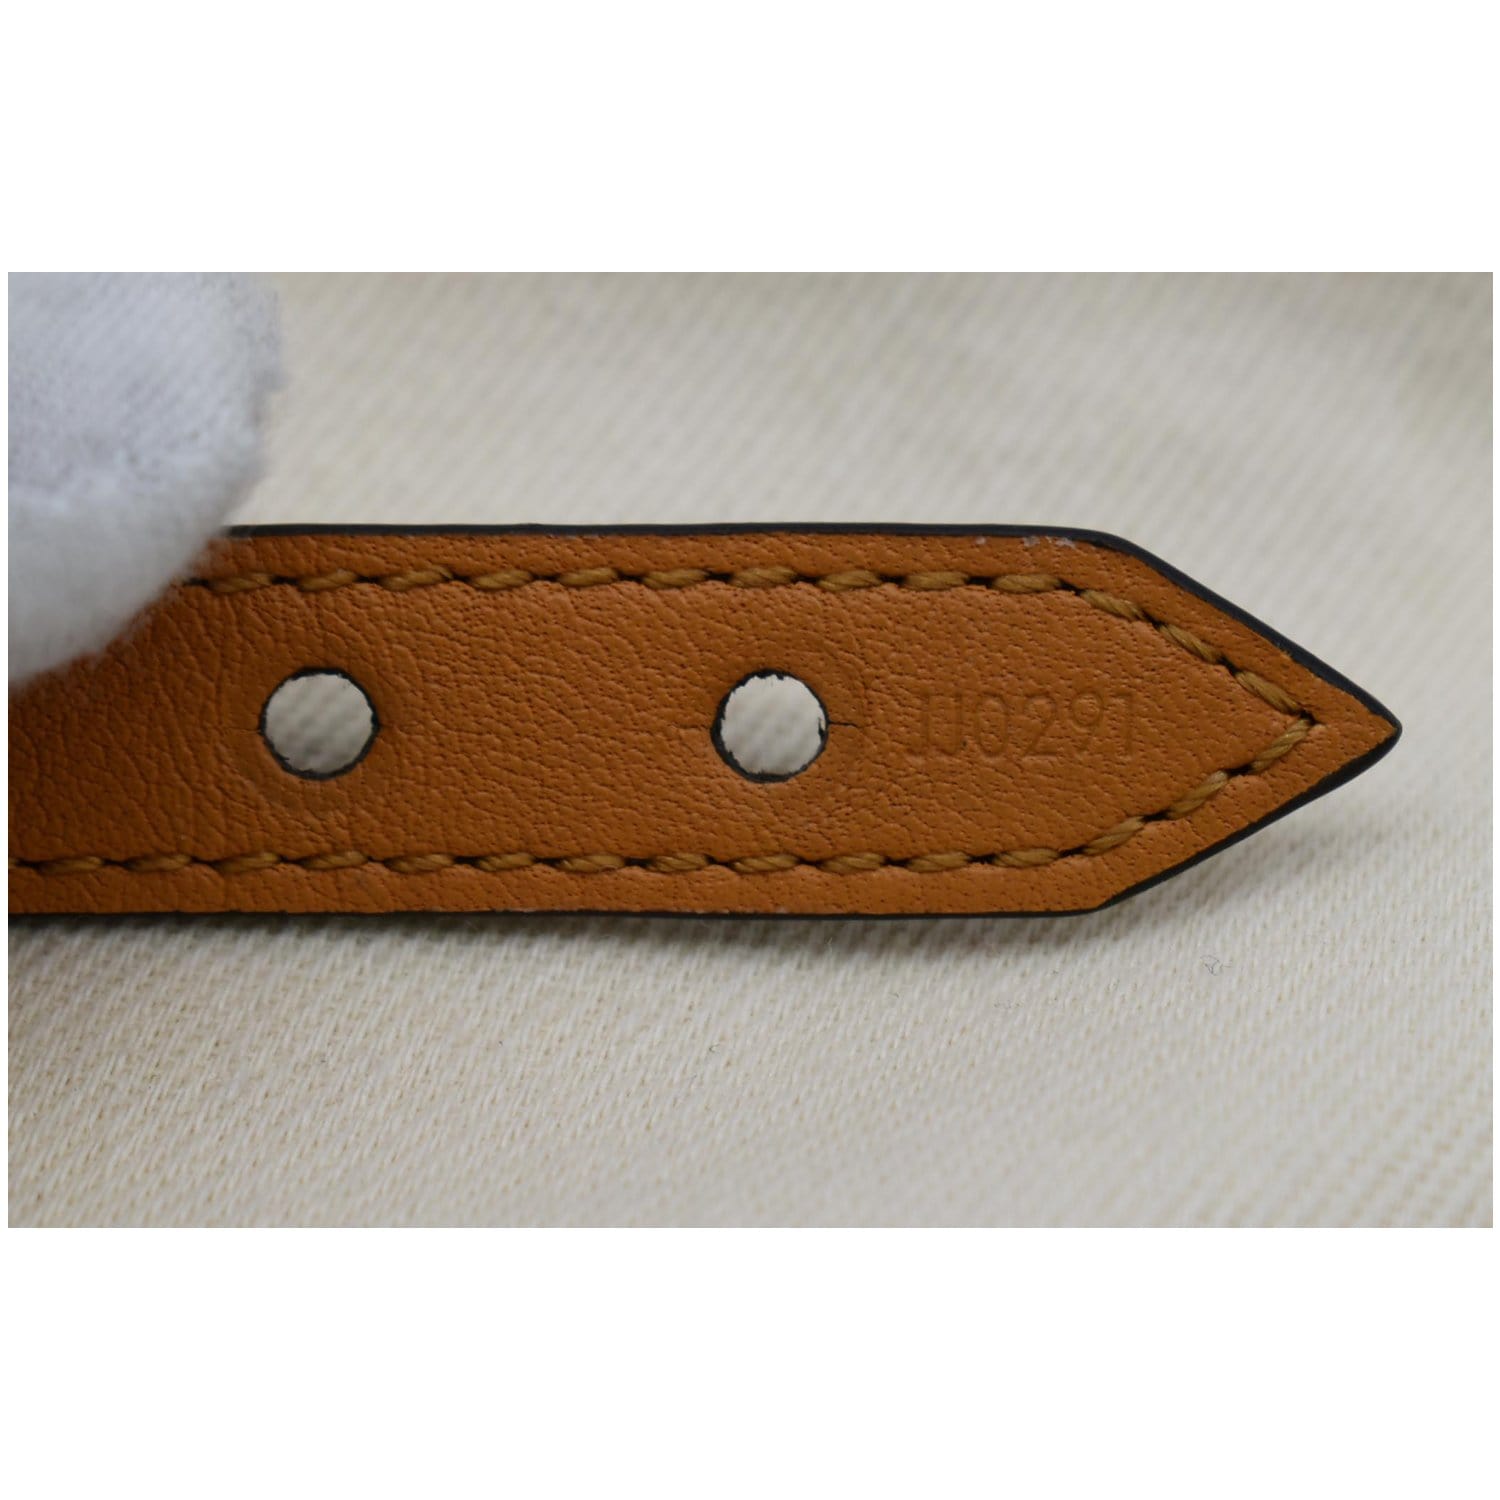 LOUIS VUITTON Monogram Essential V Bracelet 19 | FASHIONPHILE